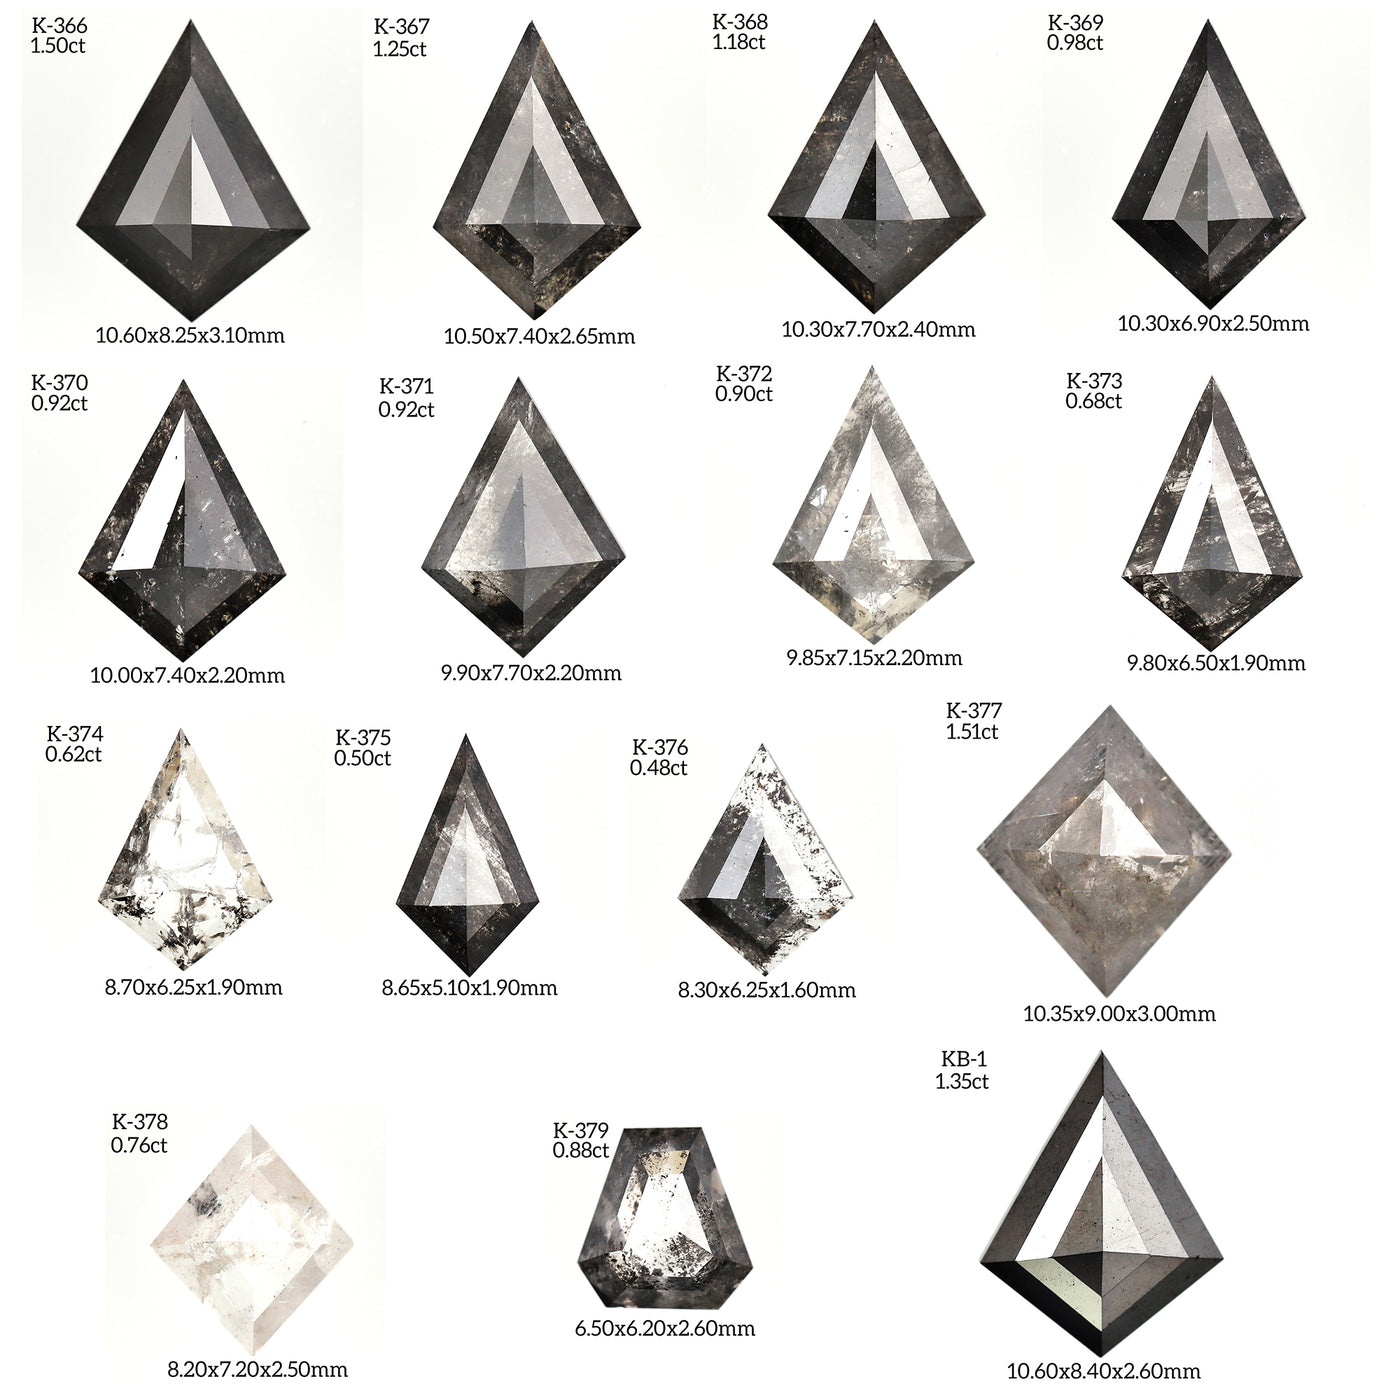 K341 - Salt and pepper kite diamond